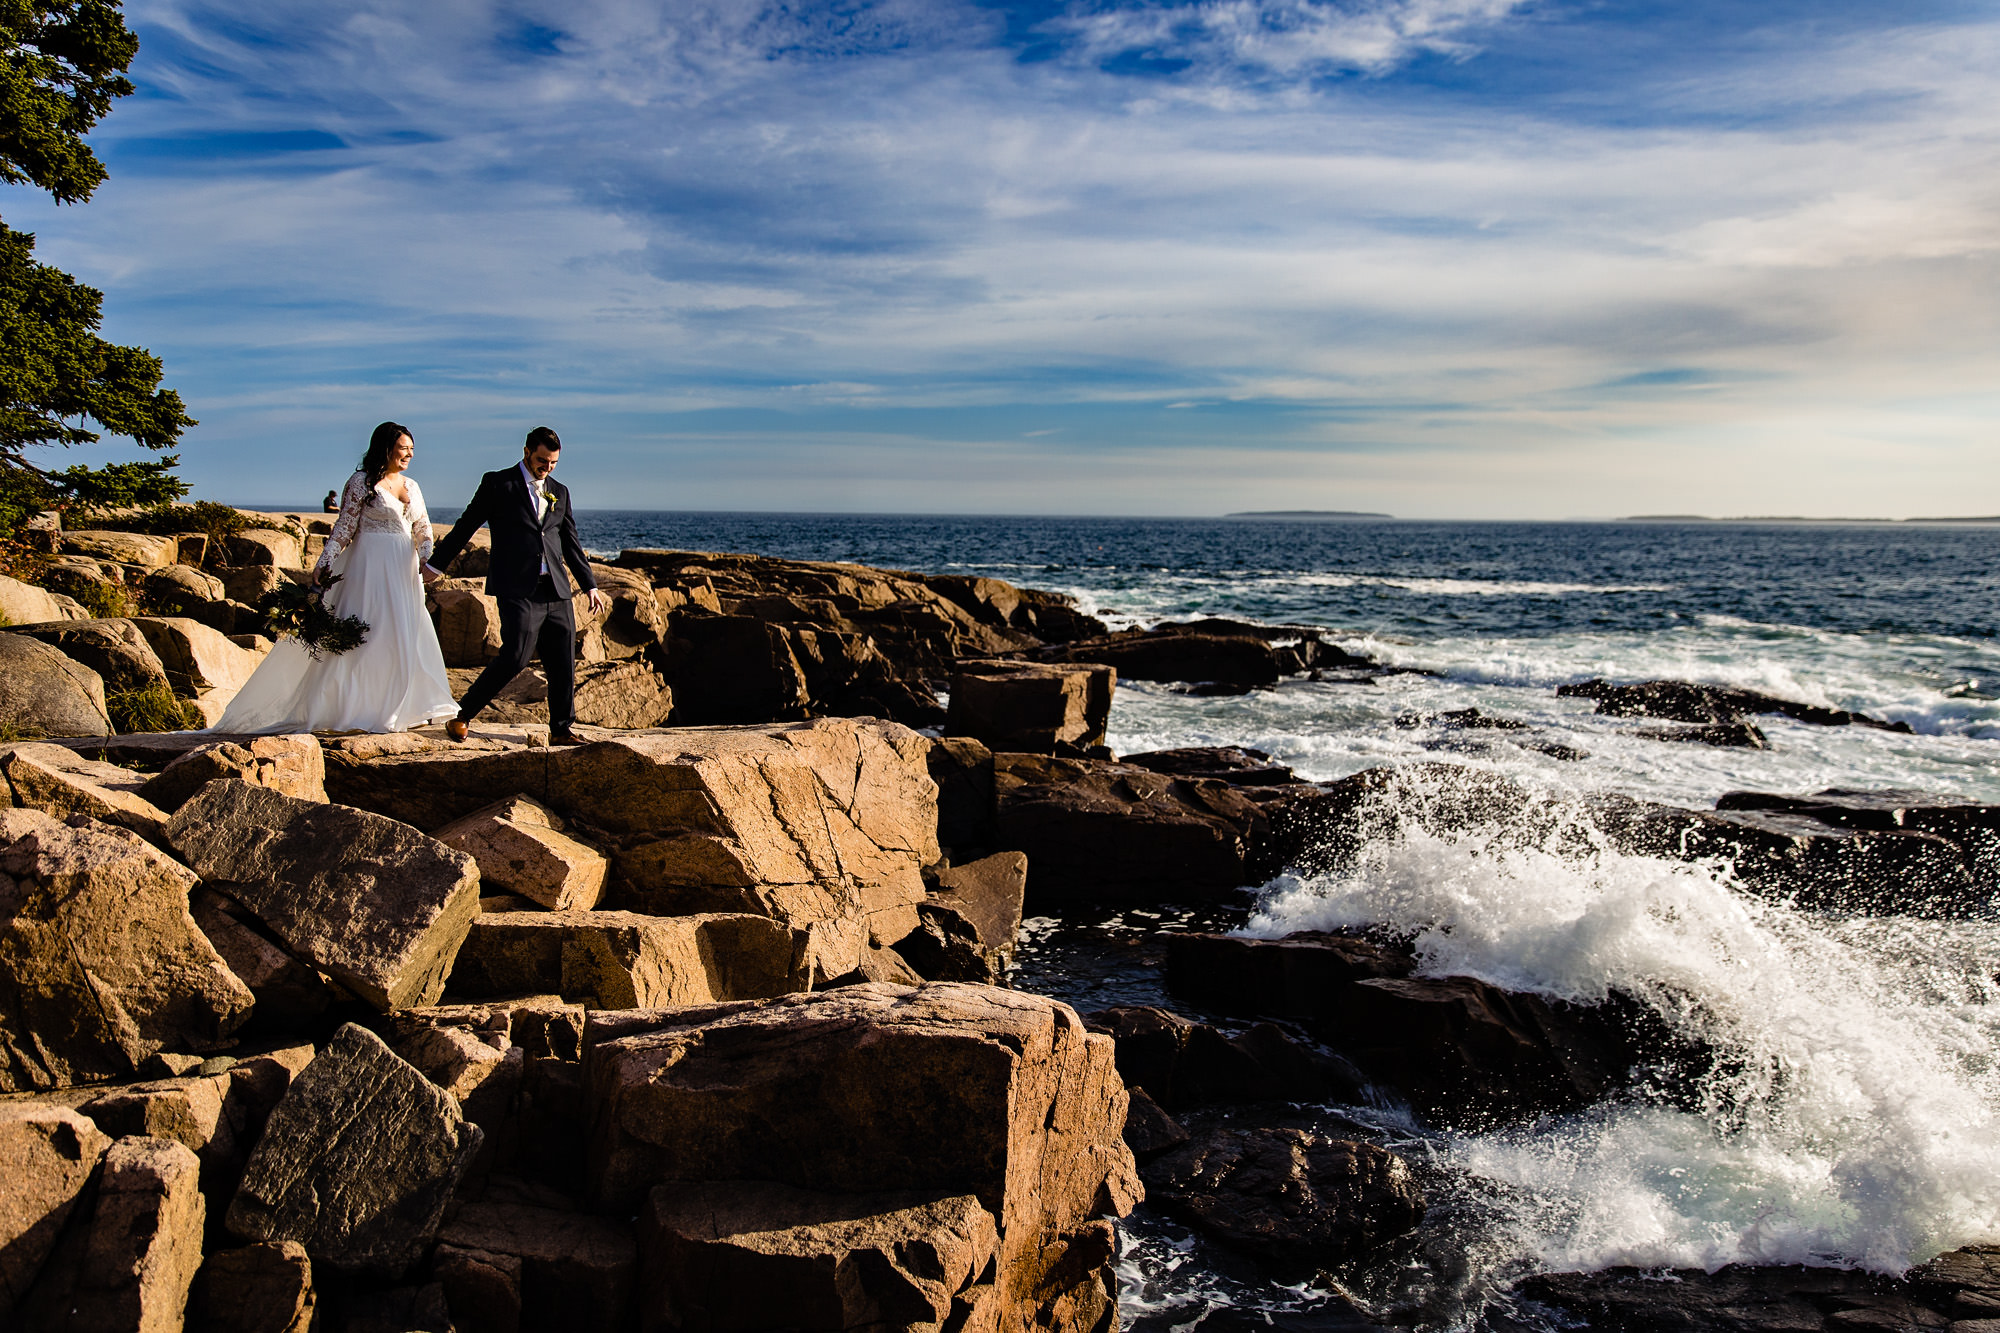 A wedding couple walk along the cliffs in Acadia